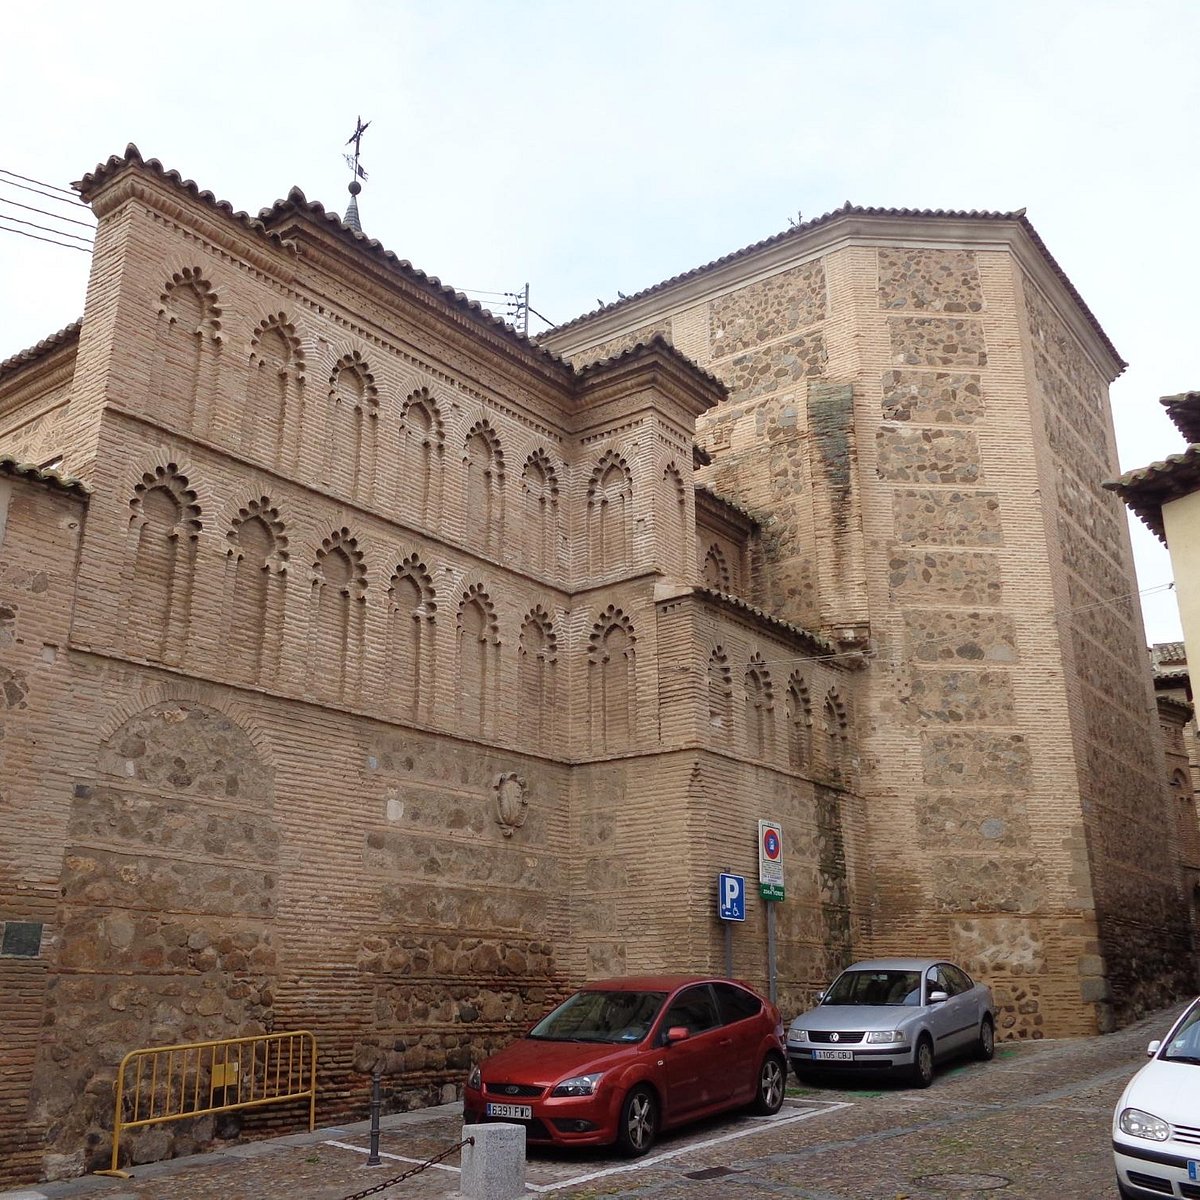 Convento de Santa Ursula, Toledo